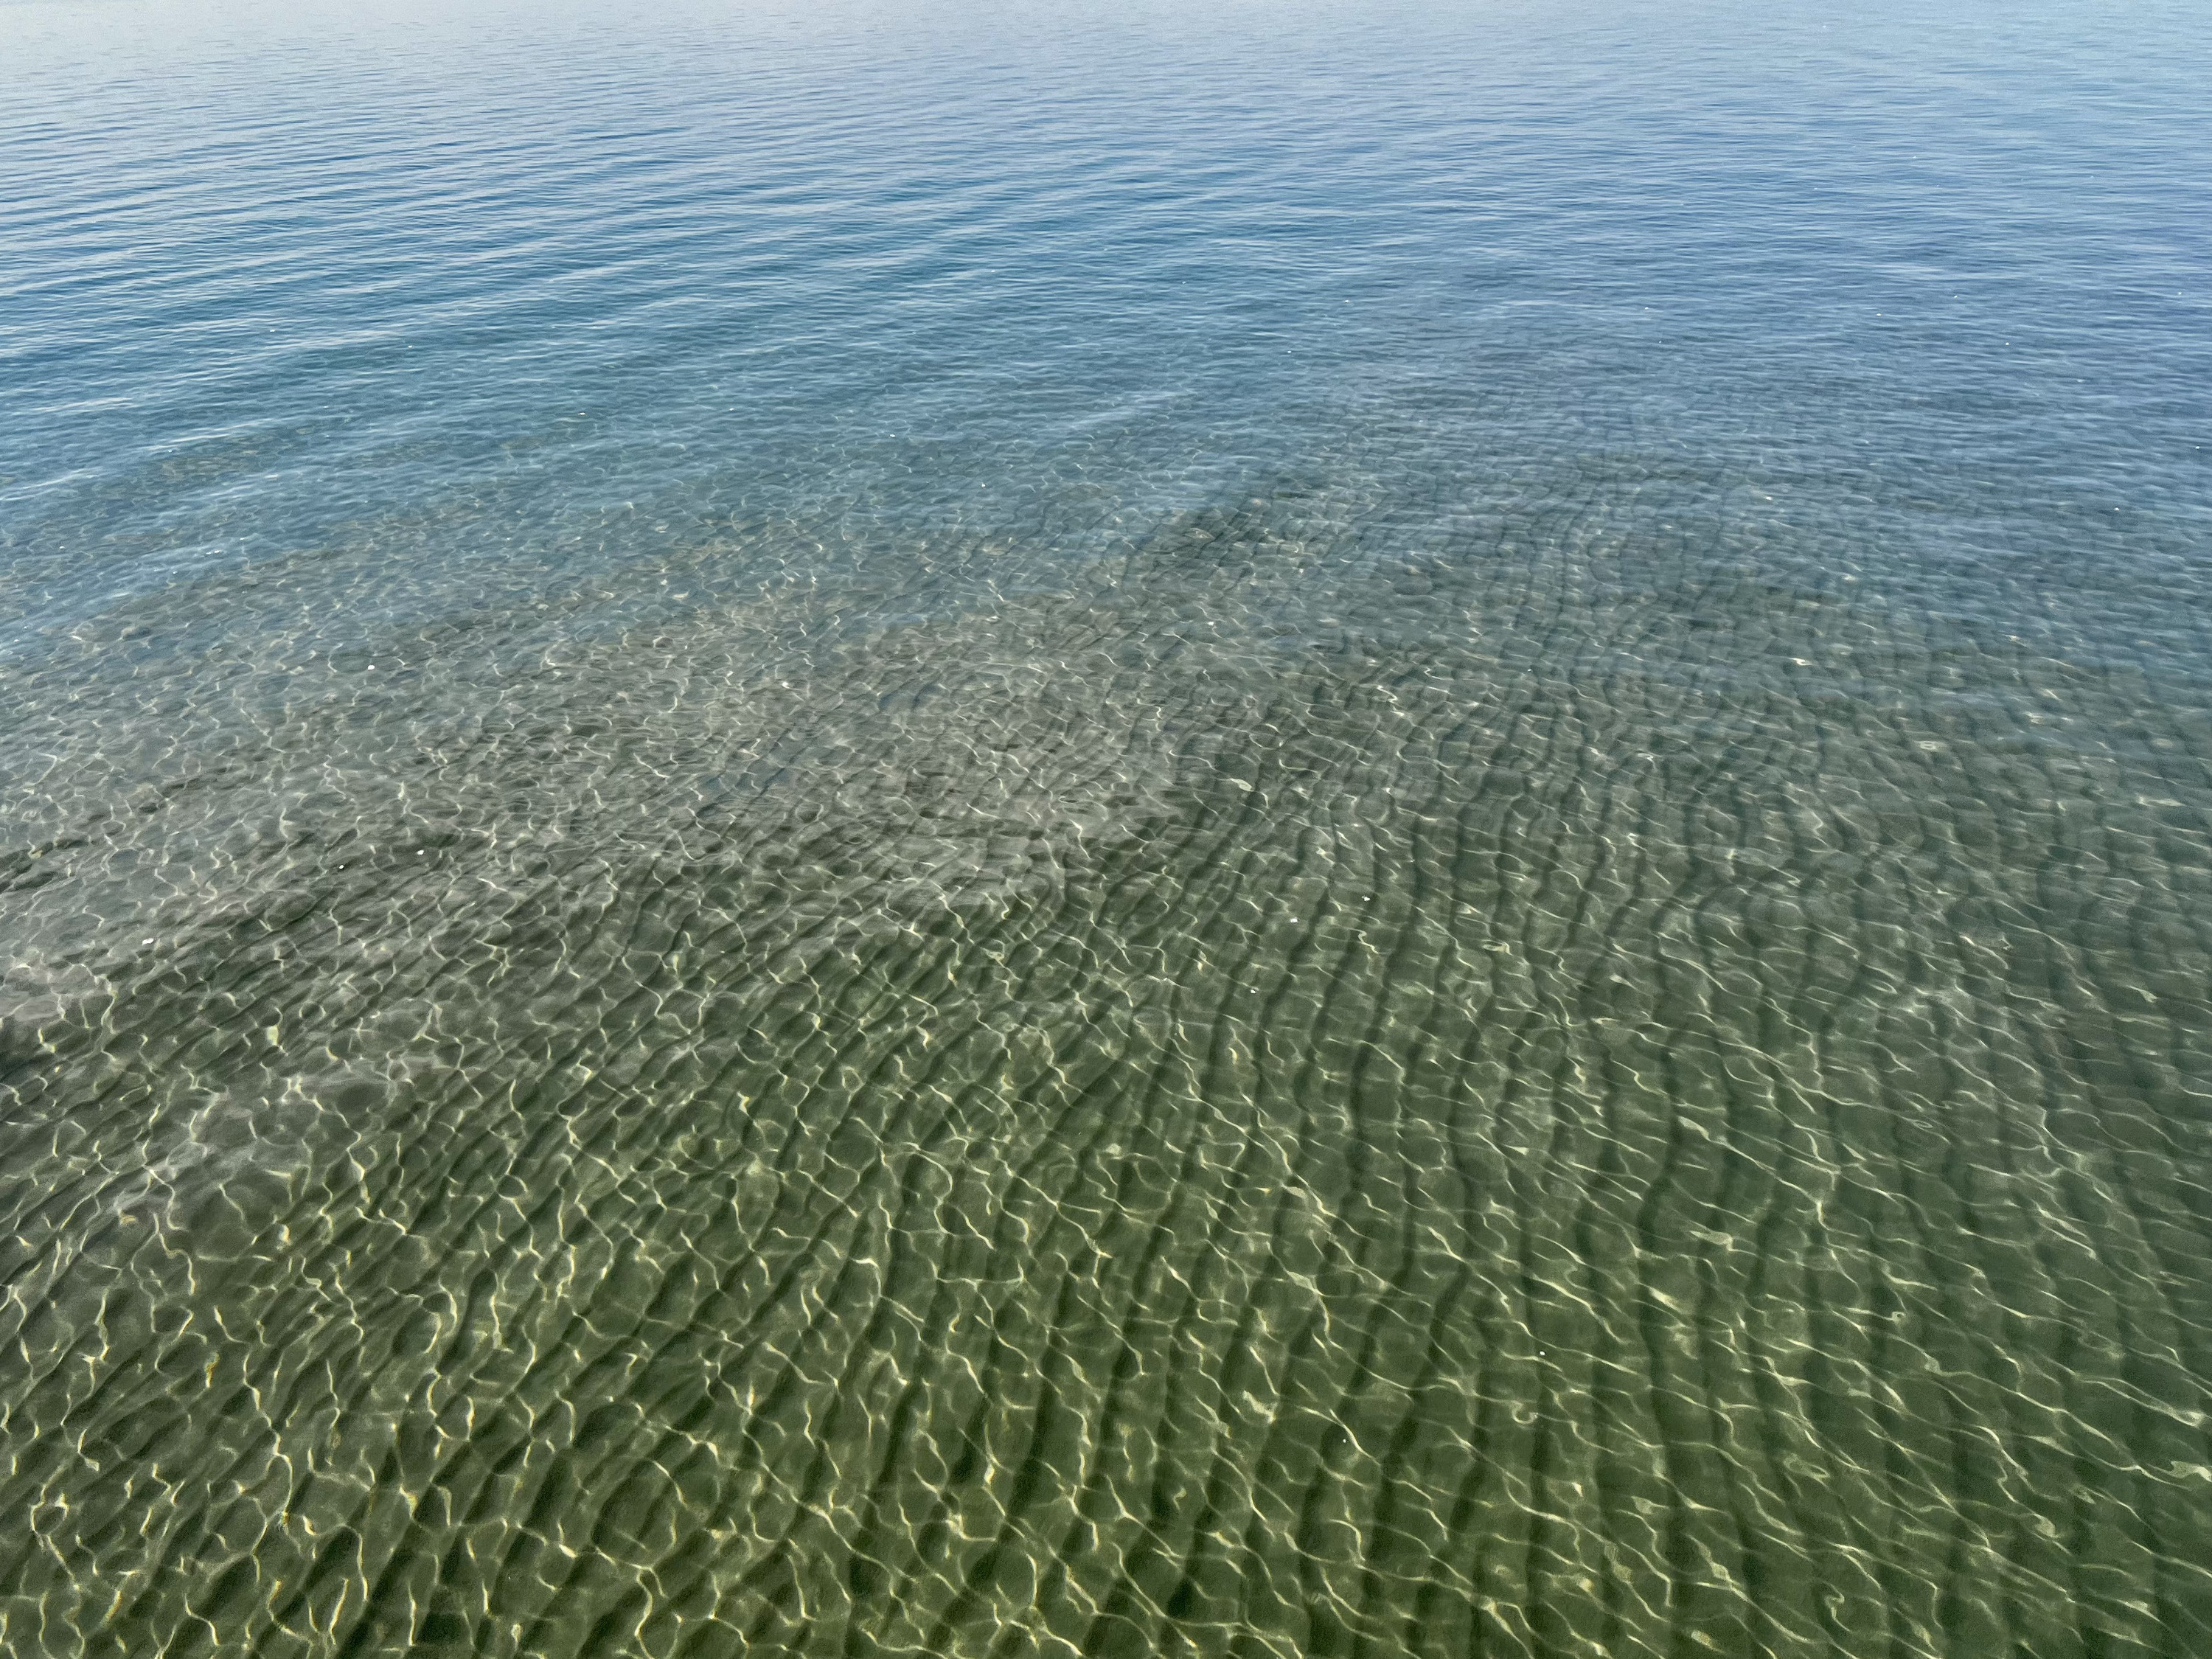 Вода прозрачная, а дно нежное, песочное — кайф и наслаждение. Не хуже нашего Байкала, да еще и с видом на горы